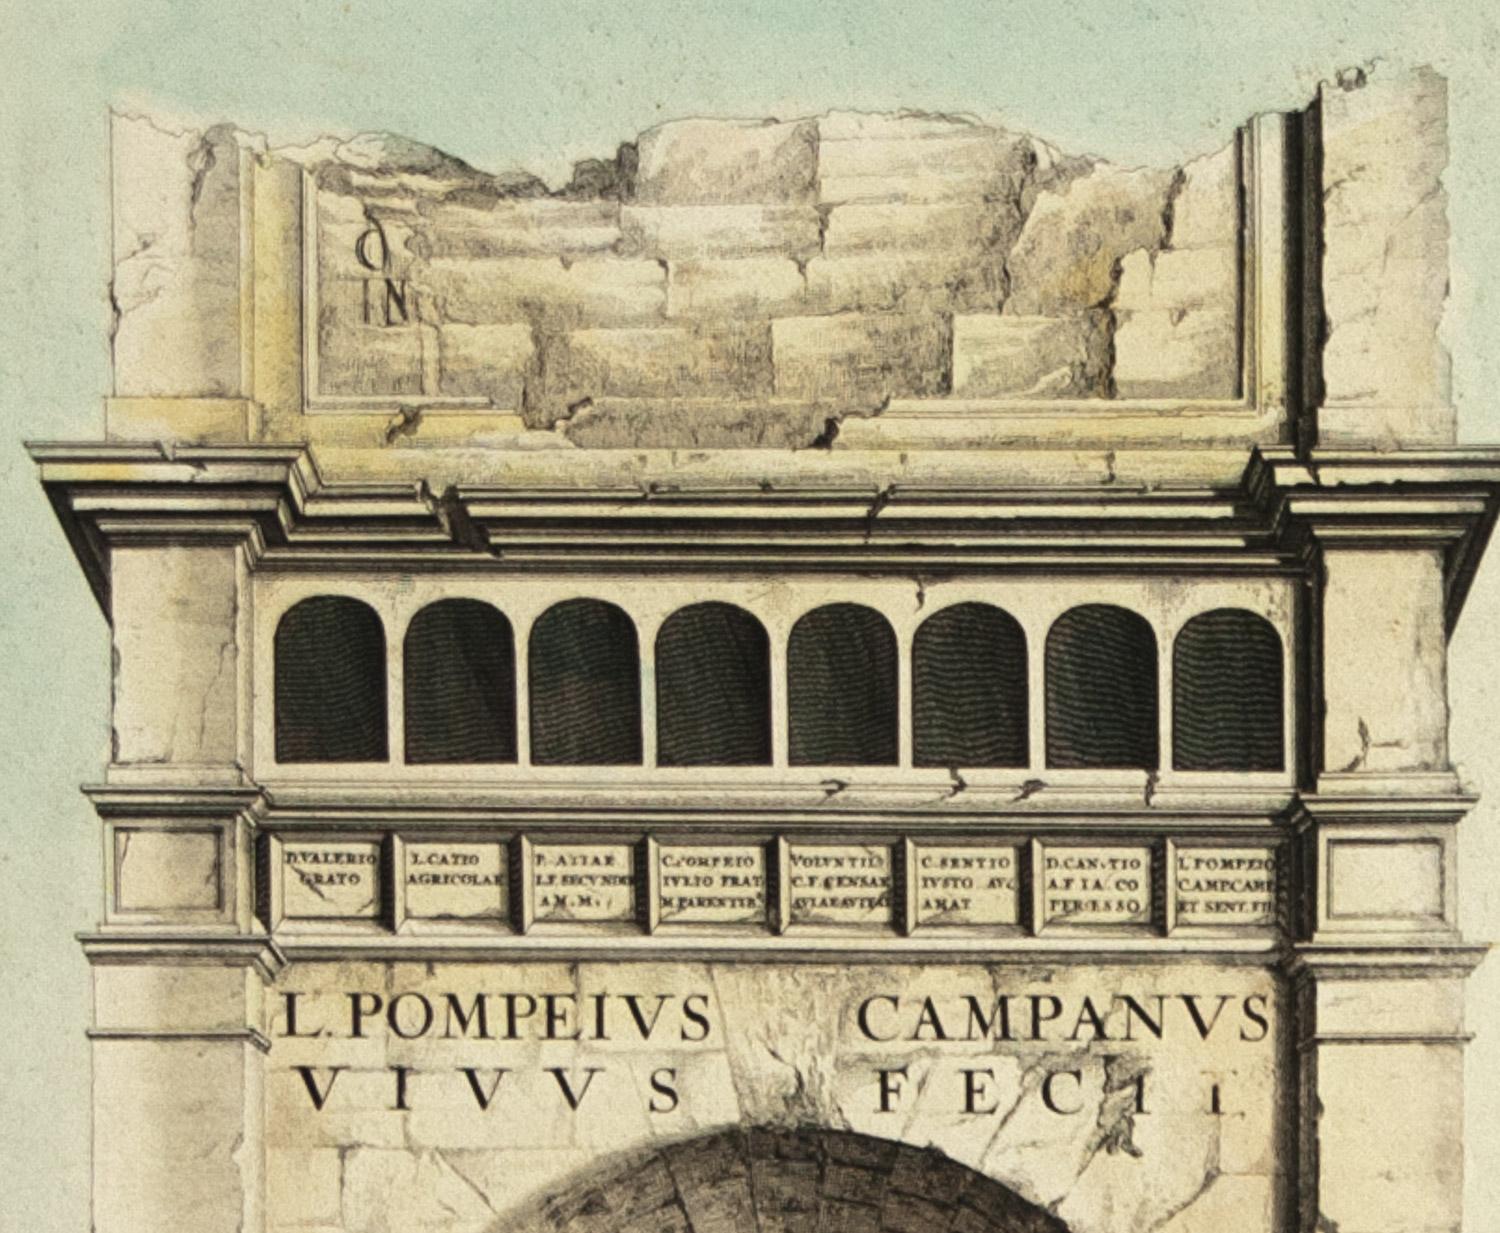    Detaillierter Plan von Aix en Provence, in Frankreich. Dieser Druck ist ein handkolorierter Doppelblattstich des berühmten Kartographen  Joan (Johannes) Blaeu ( 1596 - 1673 ). Die linke Seite des Blattes zeigt einen detaillierten Stadtplan von